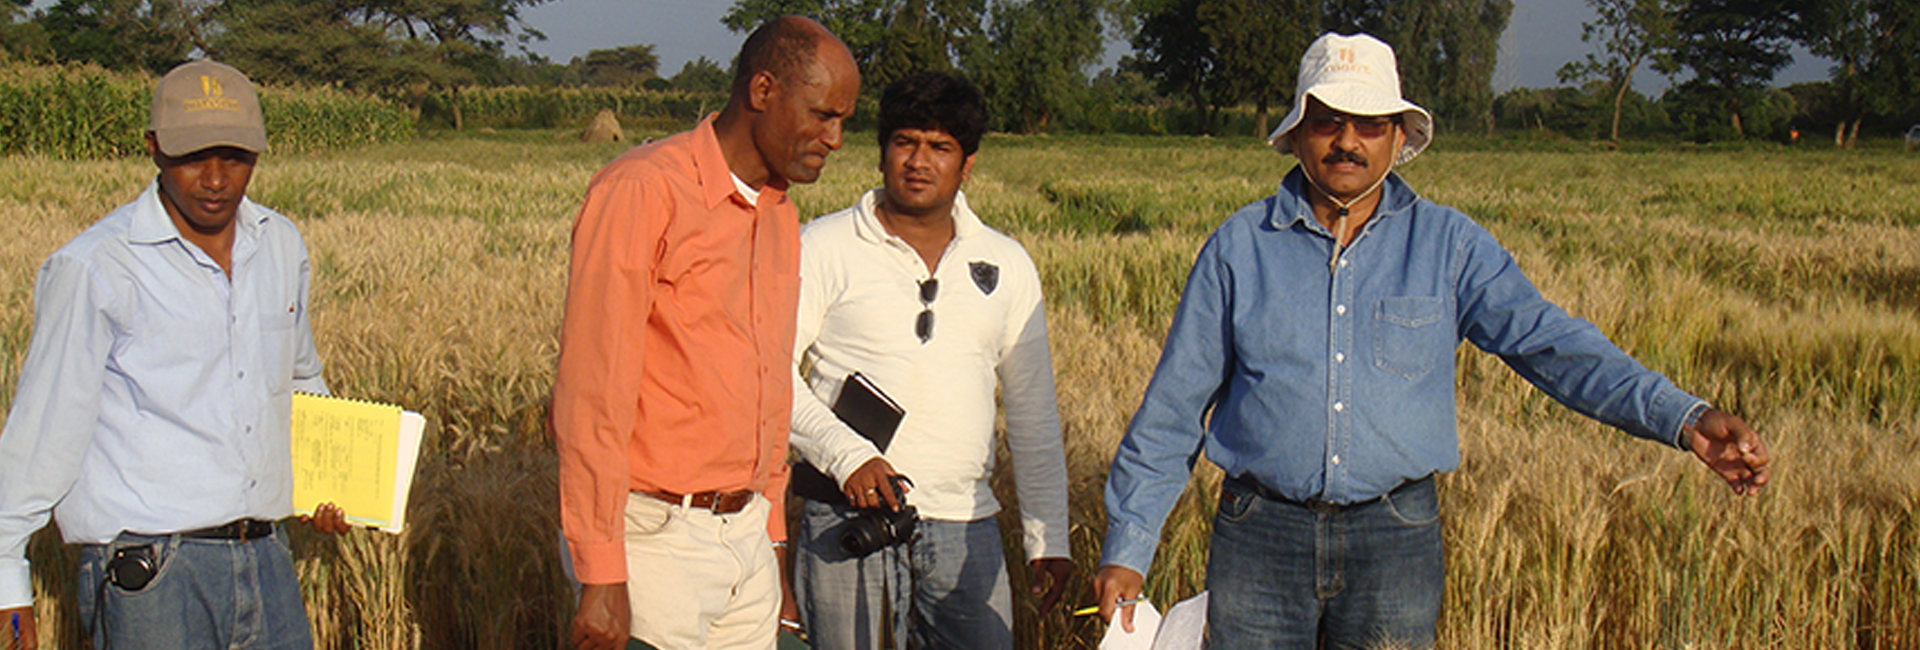 Người chiến thắng Pravasi Bharatiya Samman, nhà khoa học Tiến sĩ Ravi Singh đang nỗ lực hướng tới an ninh lương thực cho tất cả mọi người